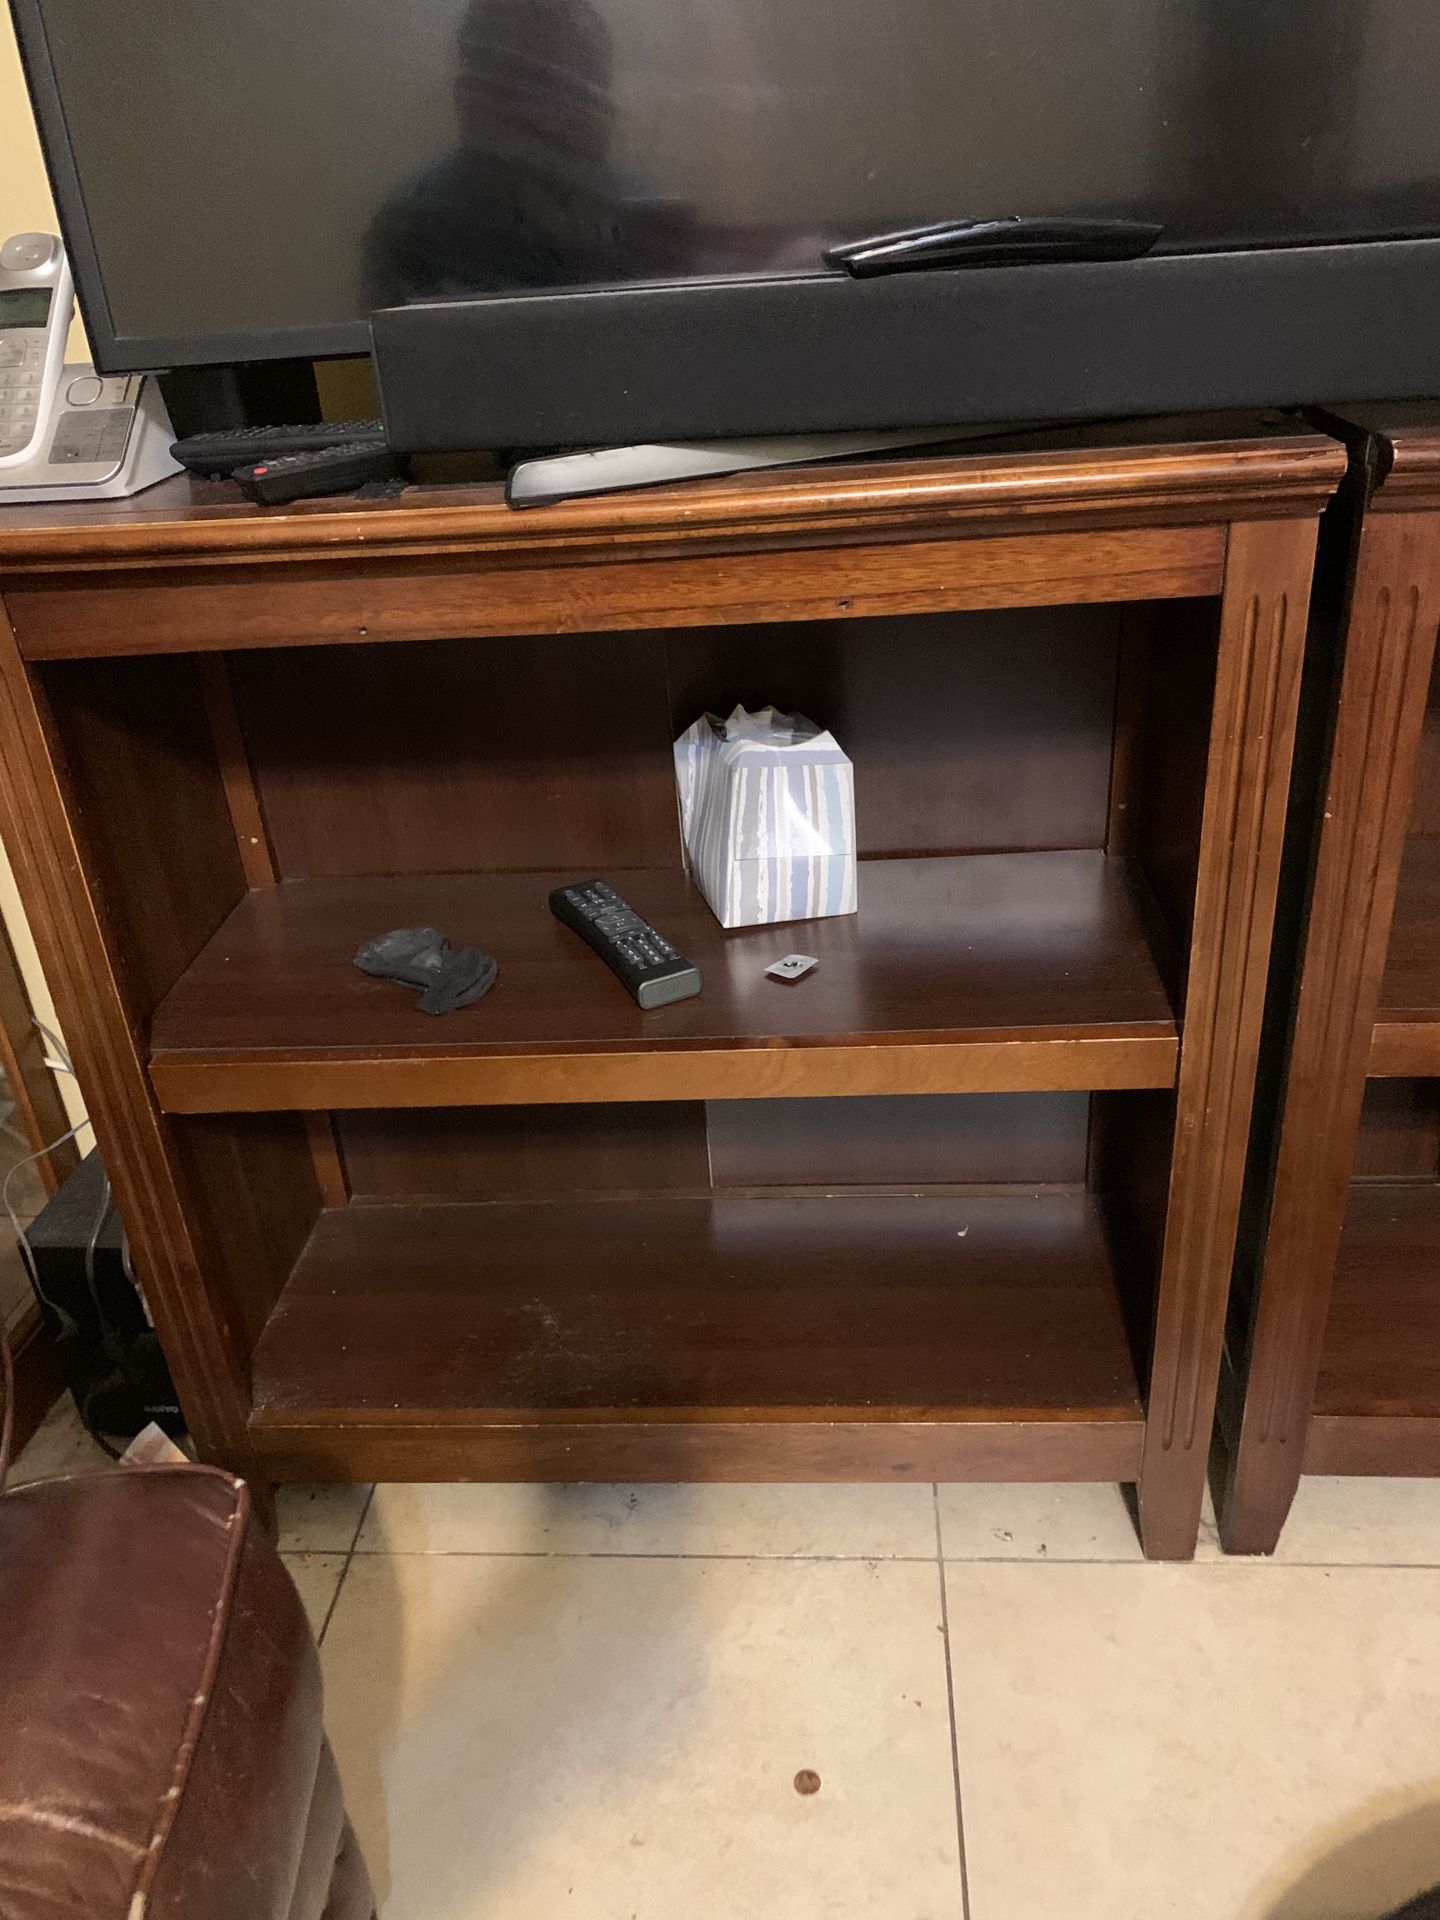 Bookshelves/TV stand